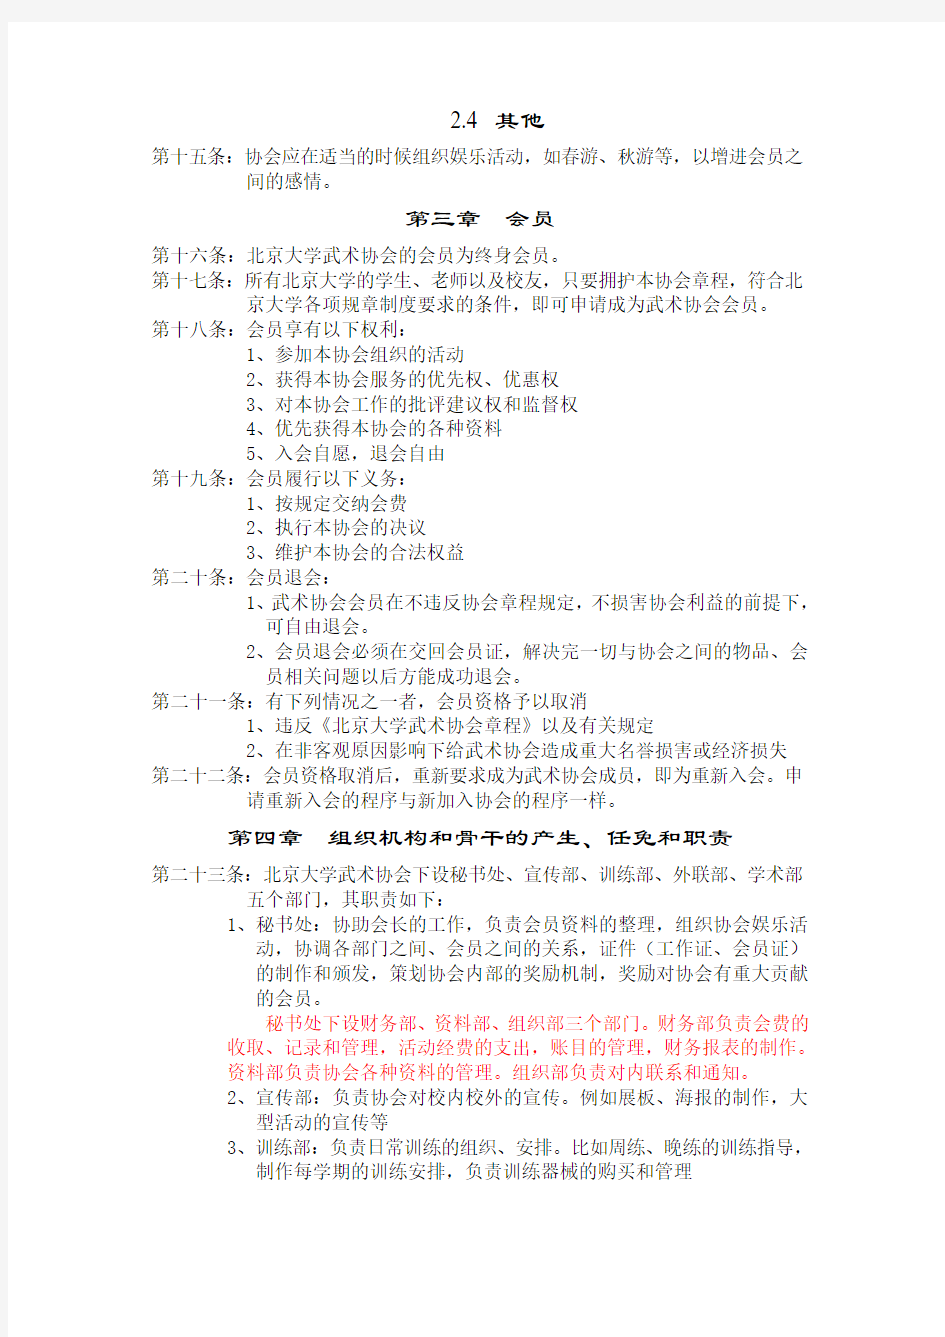 北京大学武术协会章程草案-北大未名BBS